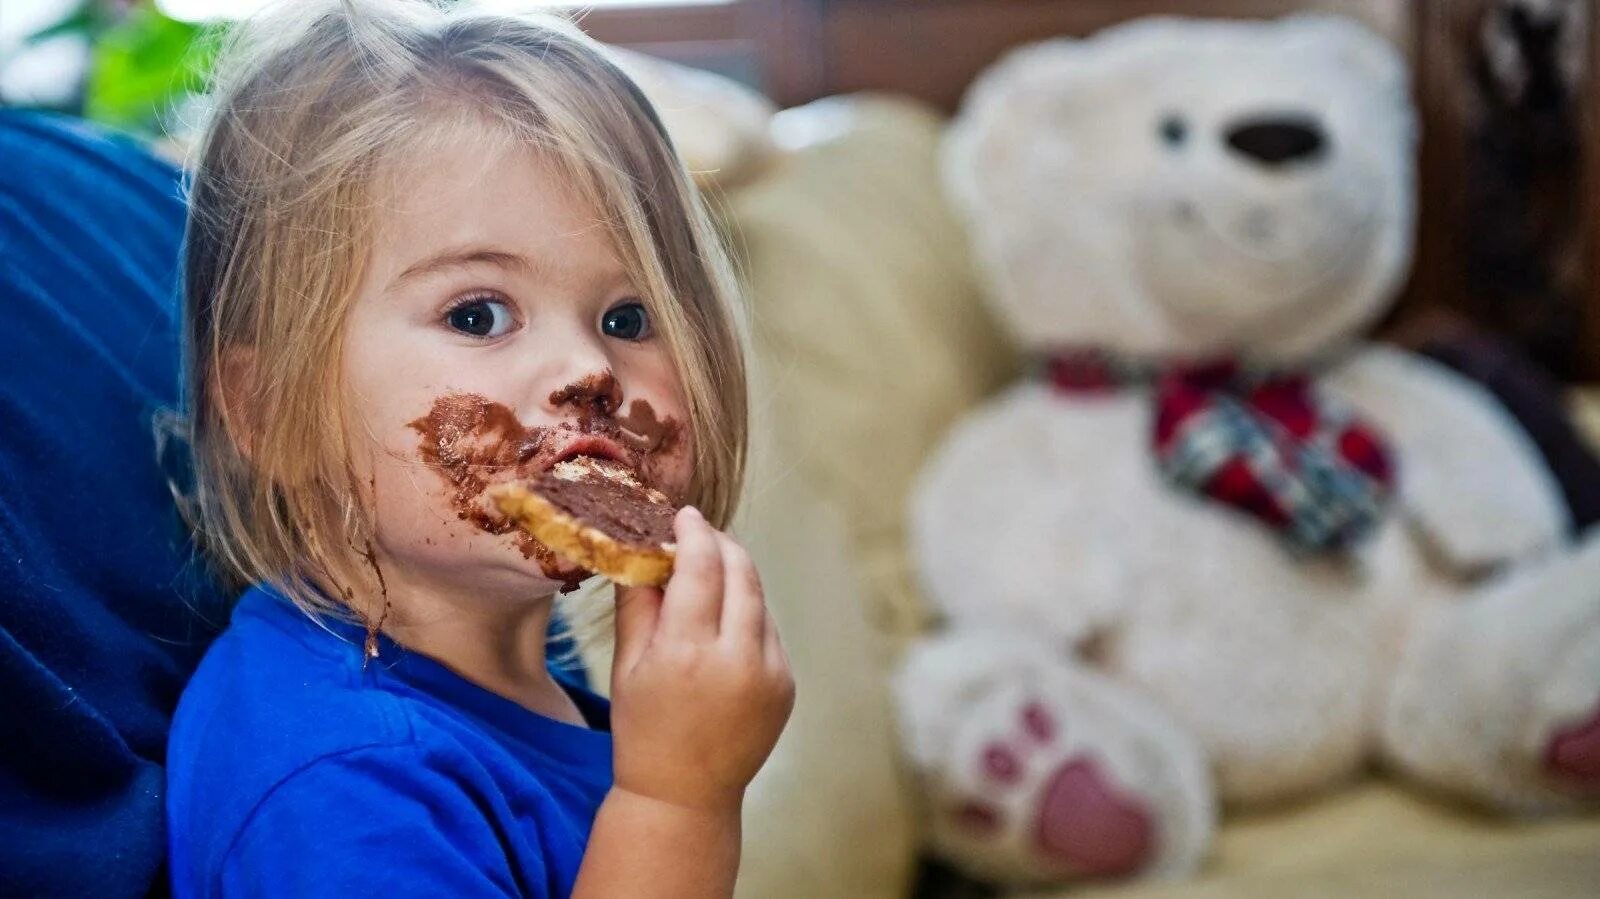 Сладости для детей. Дети сладкоежки. Еда для детей. Ребенок ест сладкое.